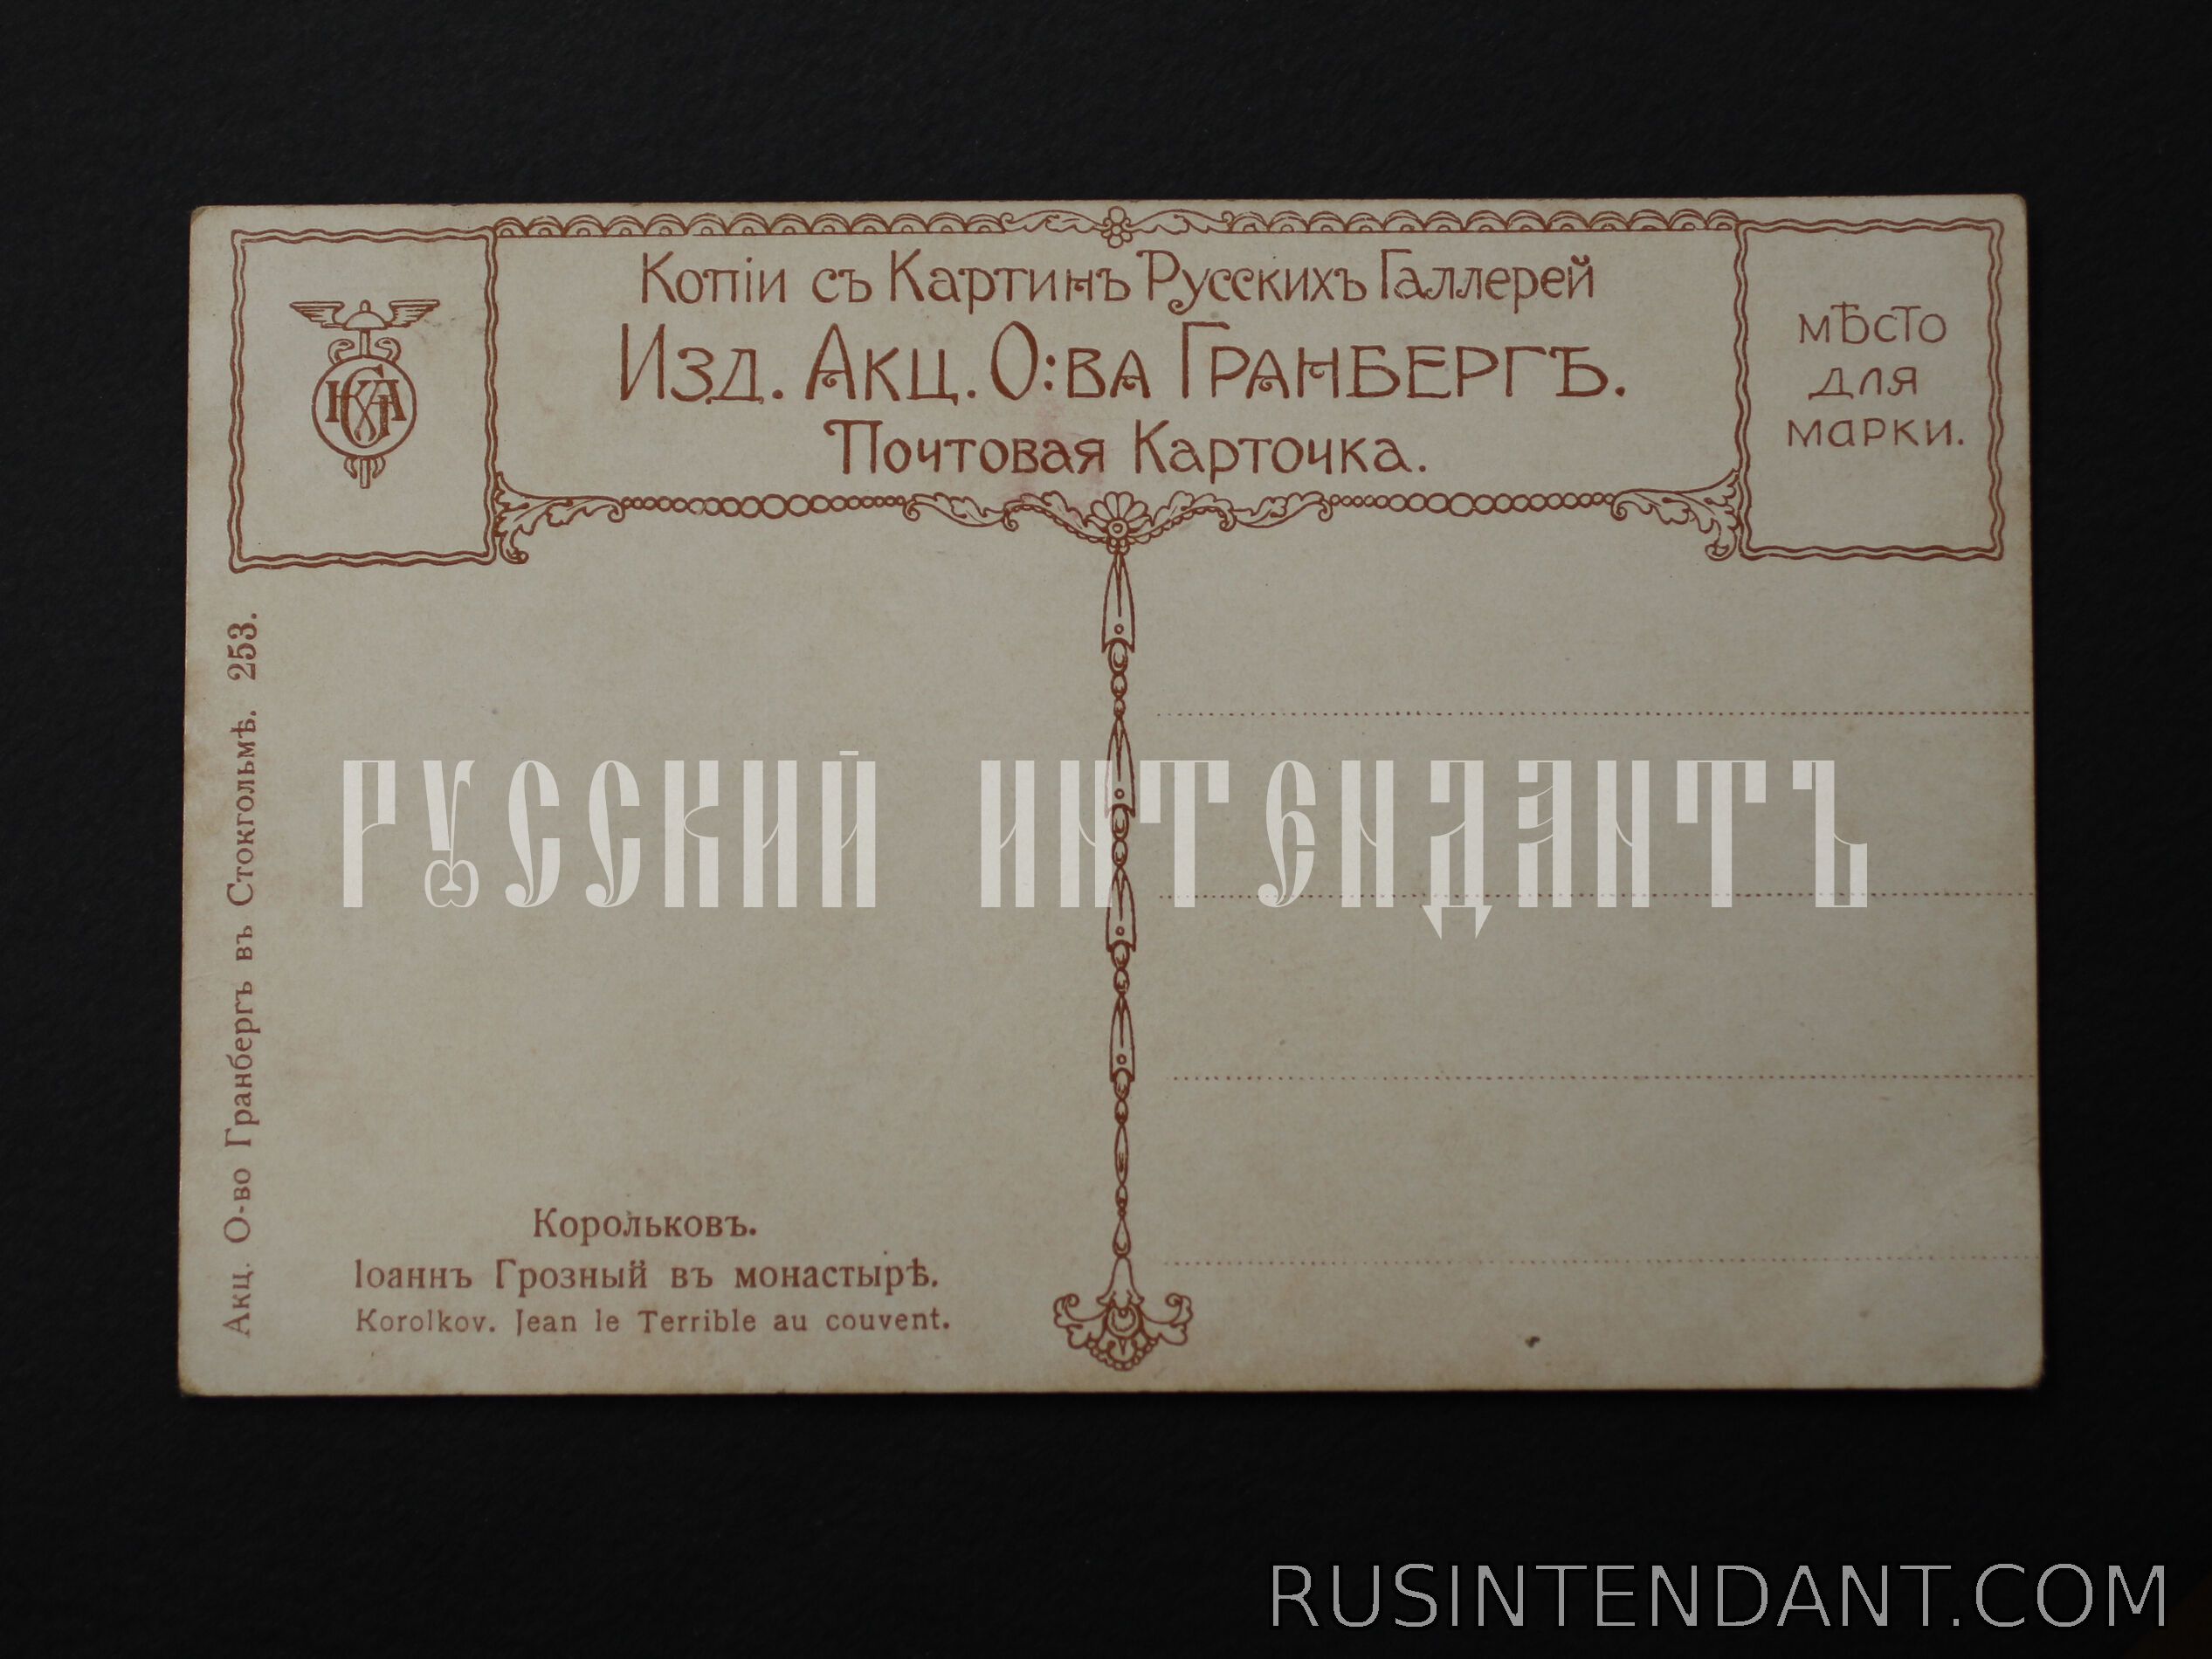 Фото 2: Почтовая карточка «Иоанн Грозный в монастыре» 